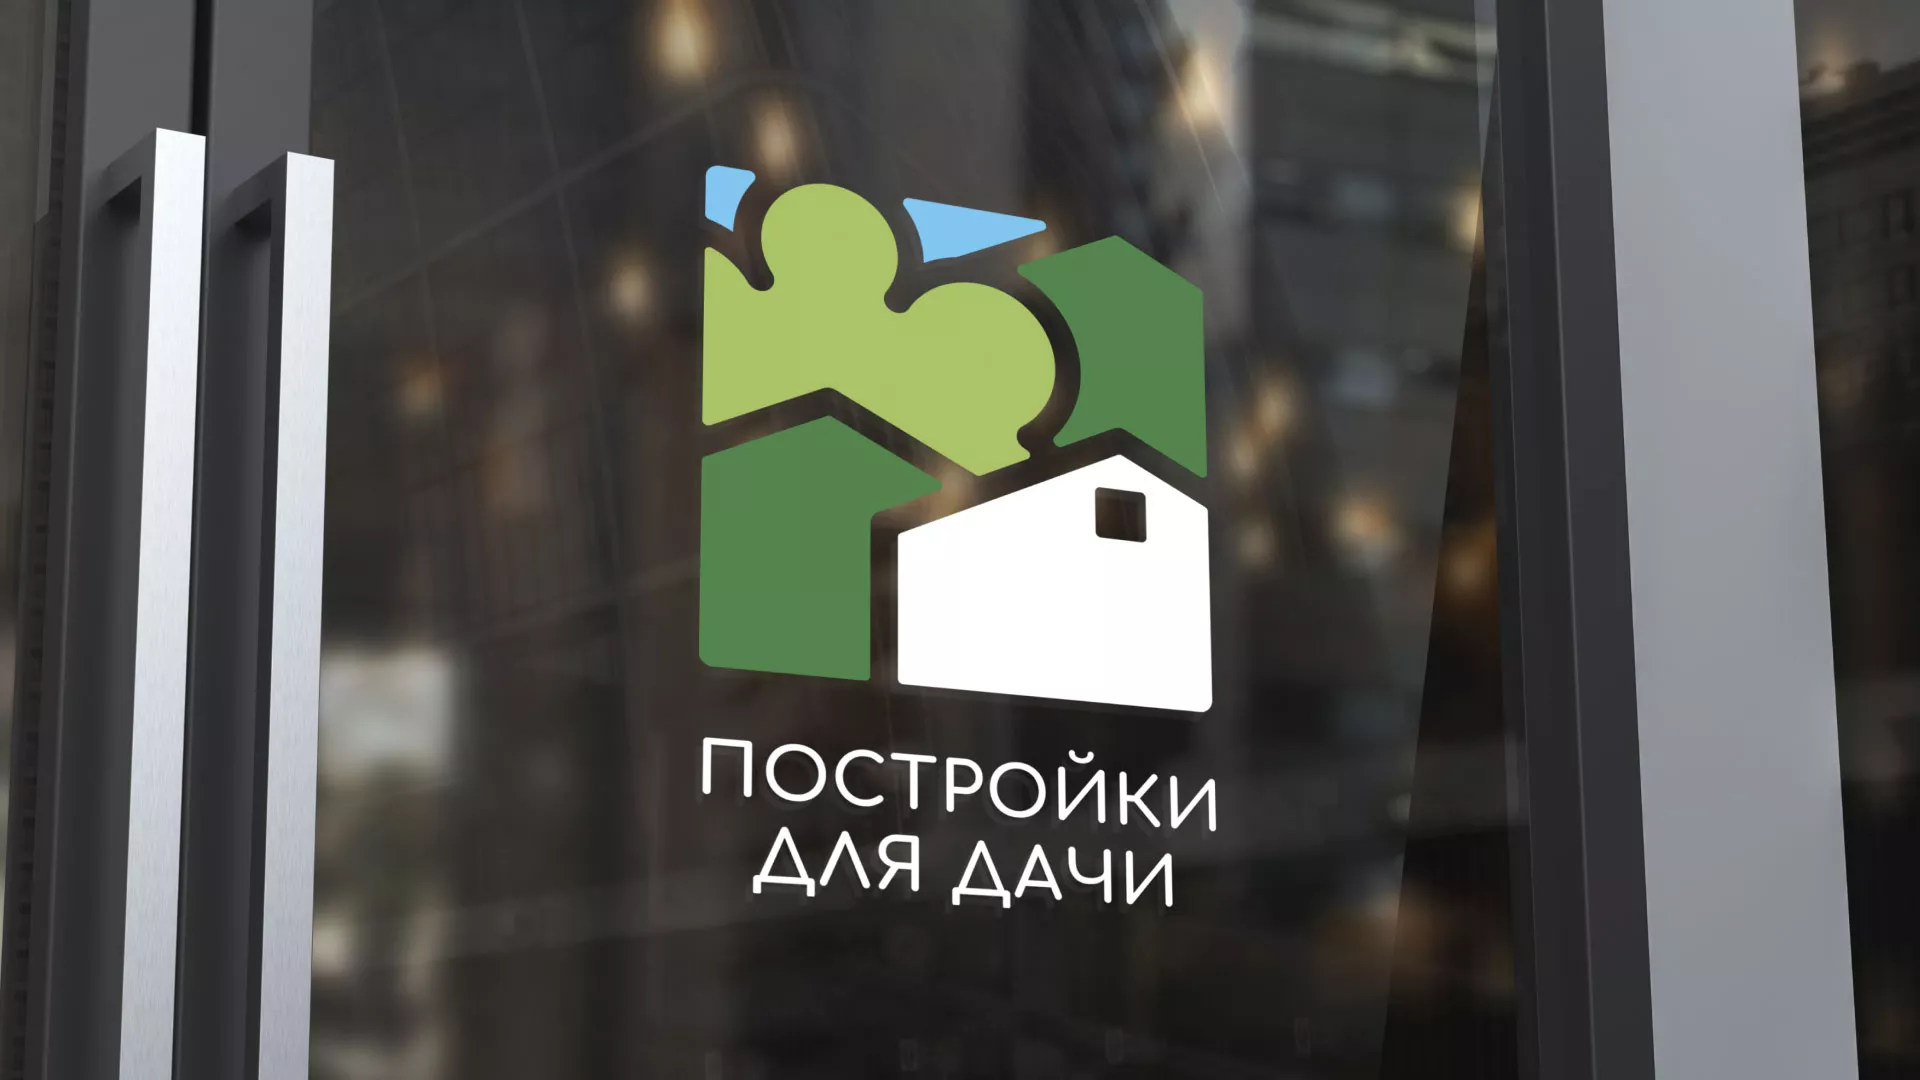 Разработка логотипа в Грязовце для компании «Постройки для дачи»